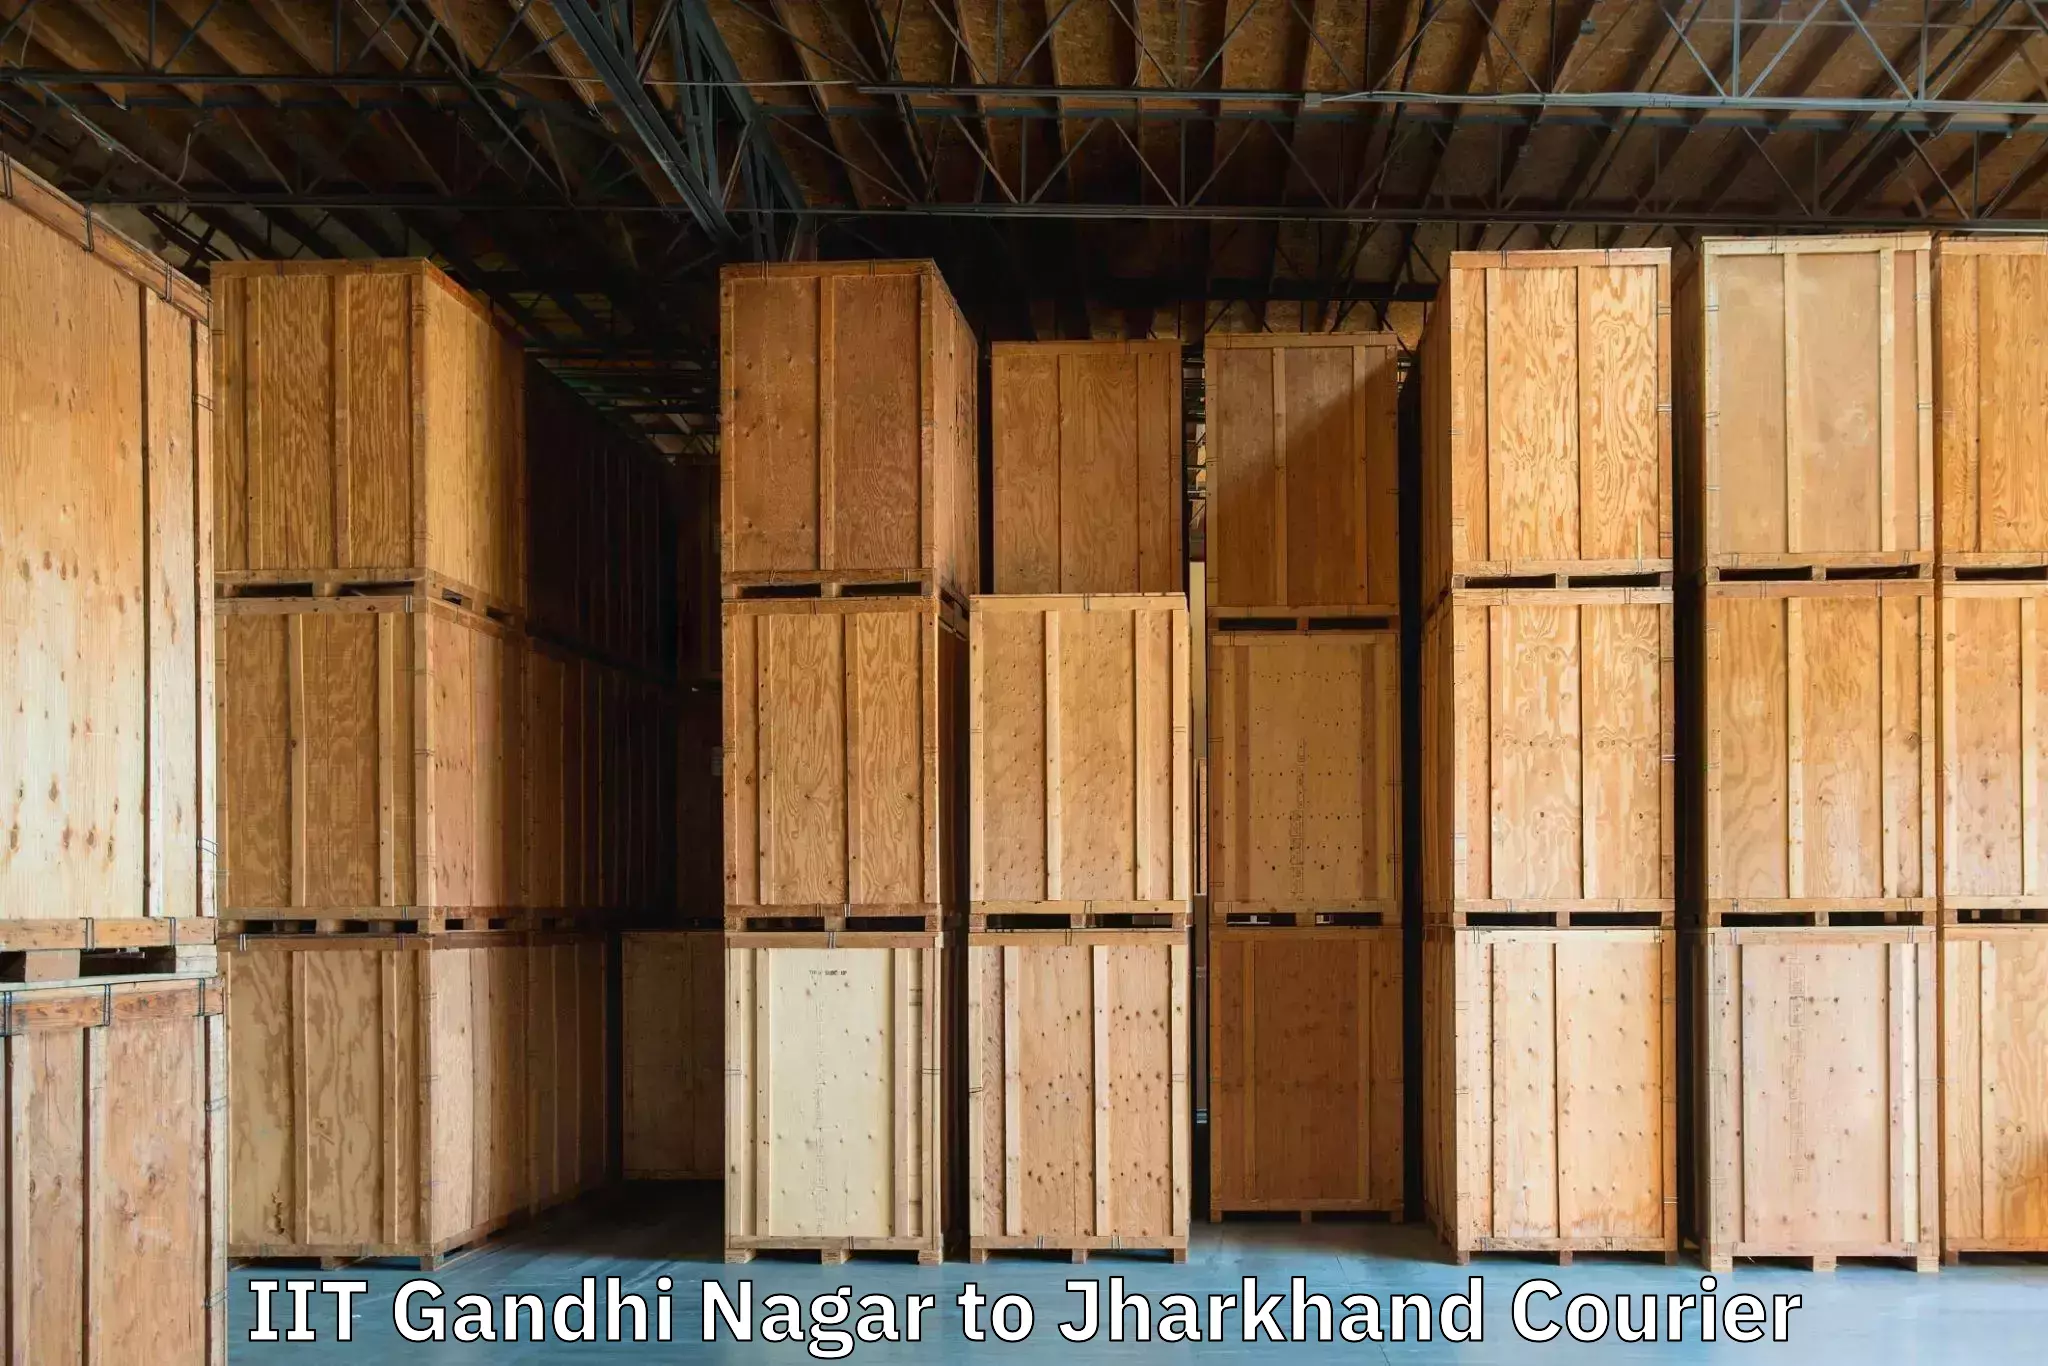 Luggage shipping planner IIT Gandhi Nagar to Shikaripara